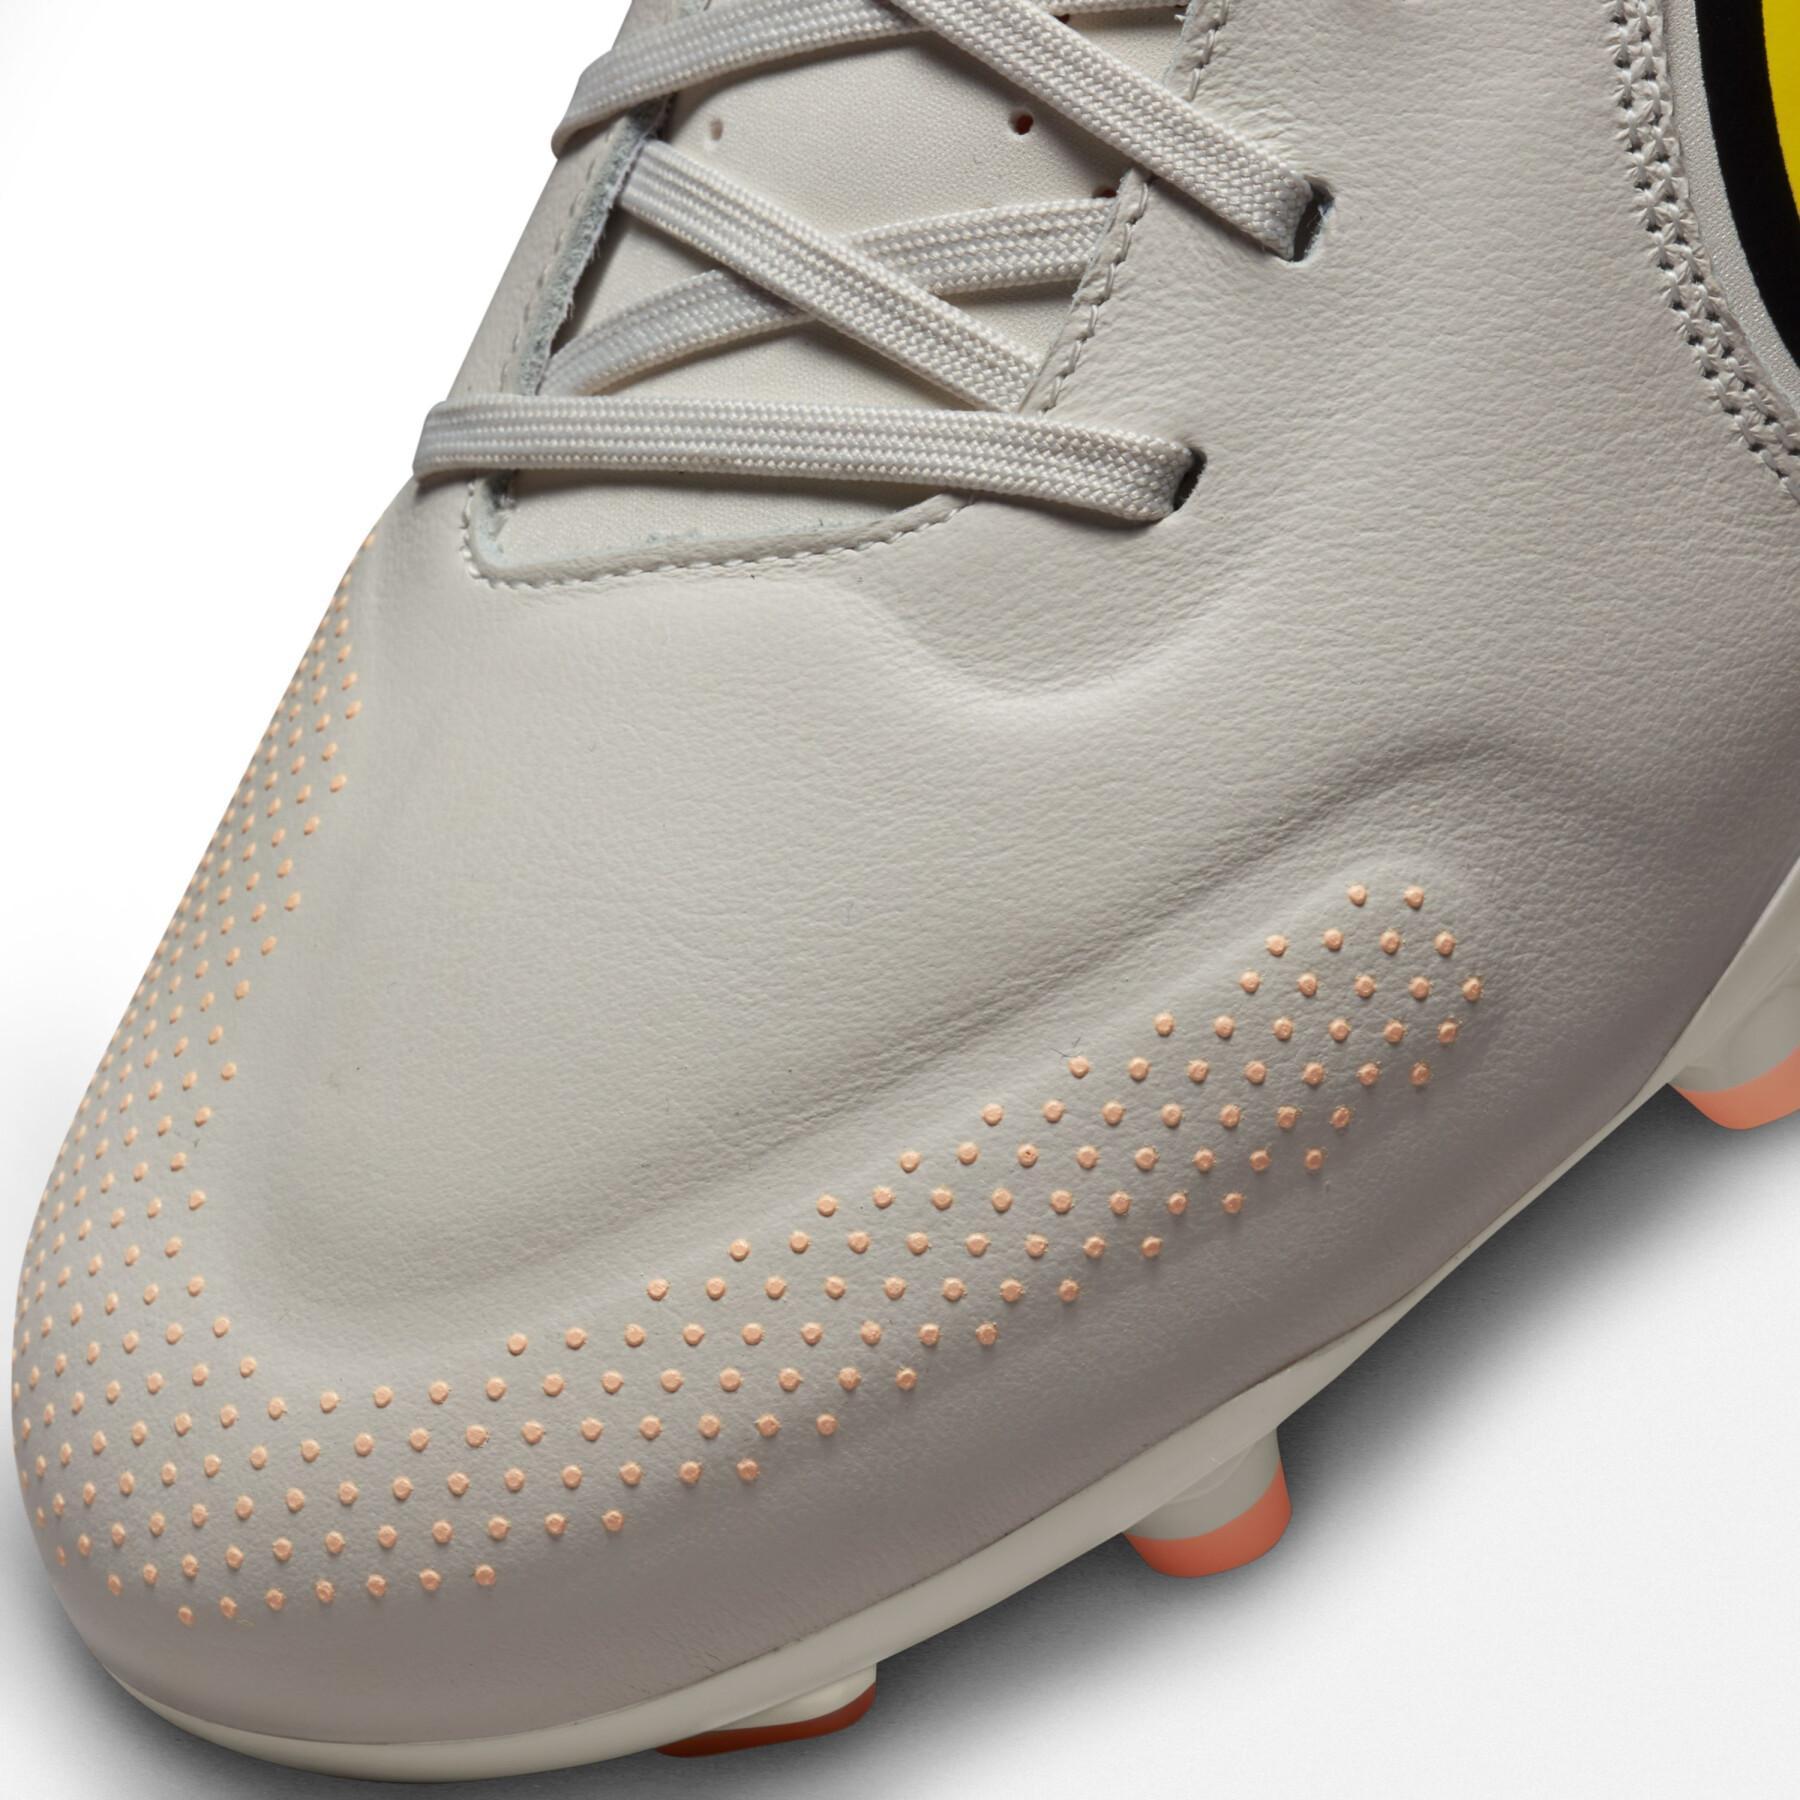 Sapatos de futebol Nike Tiempo Legend 9 Academy MG - Lucent Pack